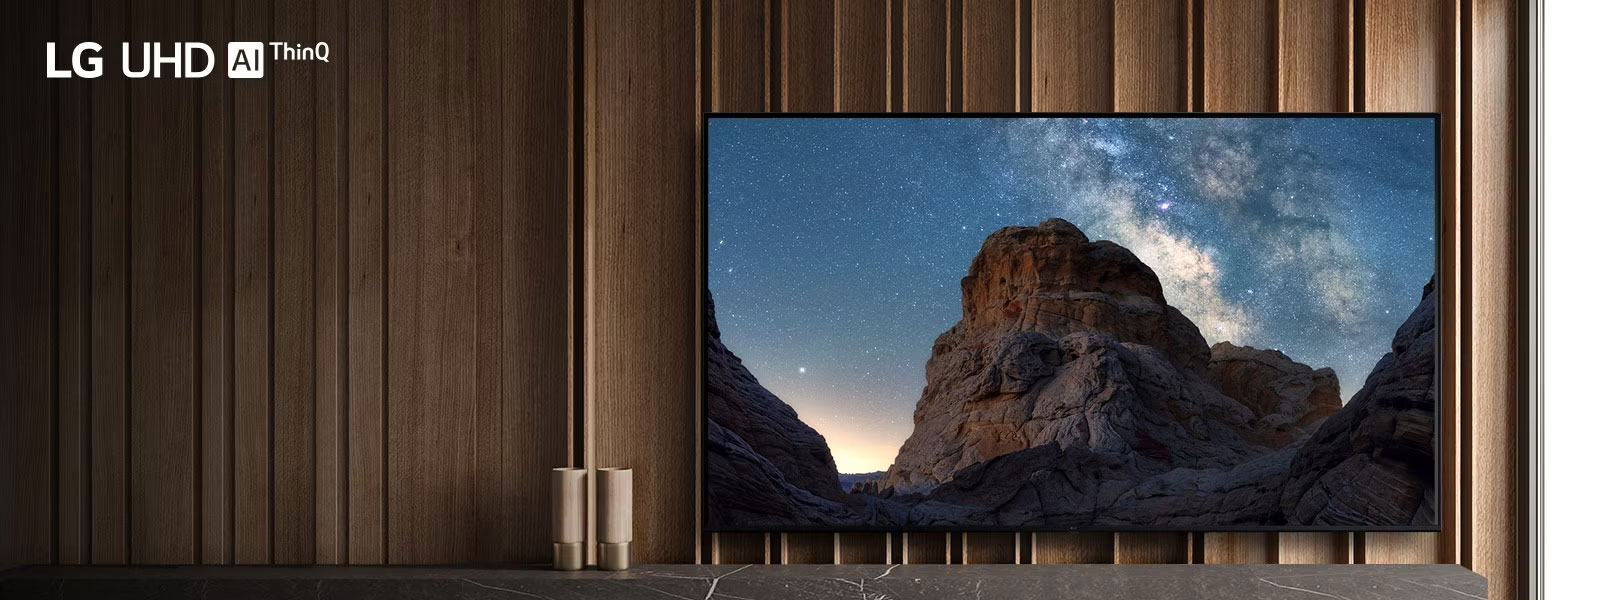 טלוויזיה ניצבת בחדר יוקרתי ורחב ידיים ובמסך מוצגת תמונת טבע של שמי לילה זרועי כוכבים והרים סלעיים.